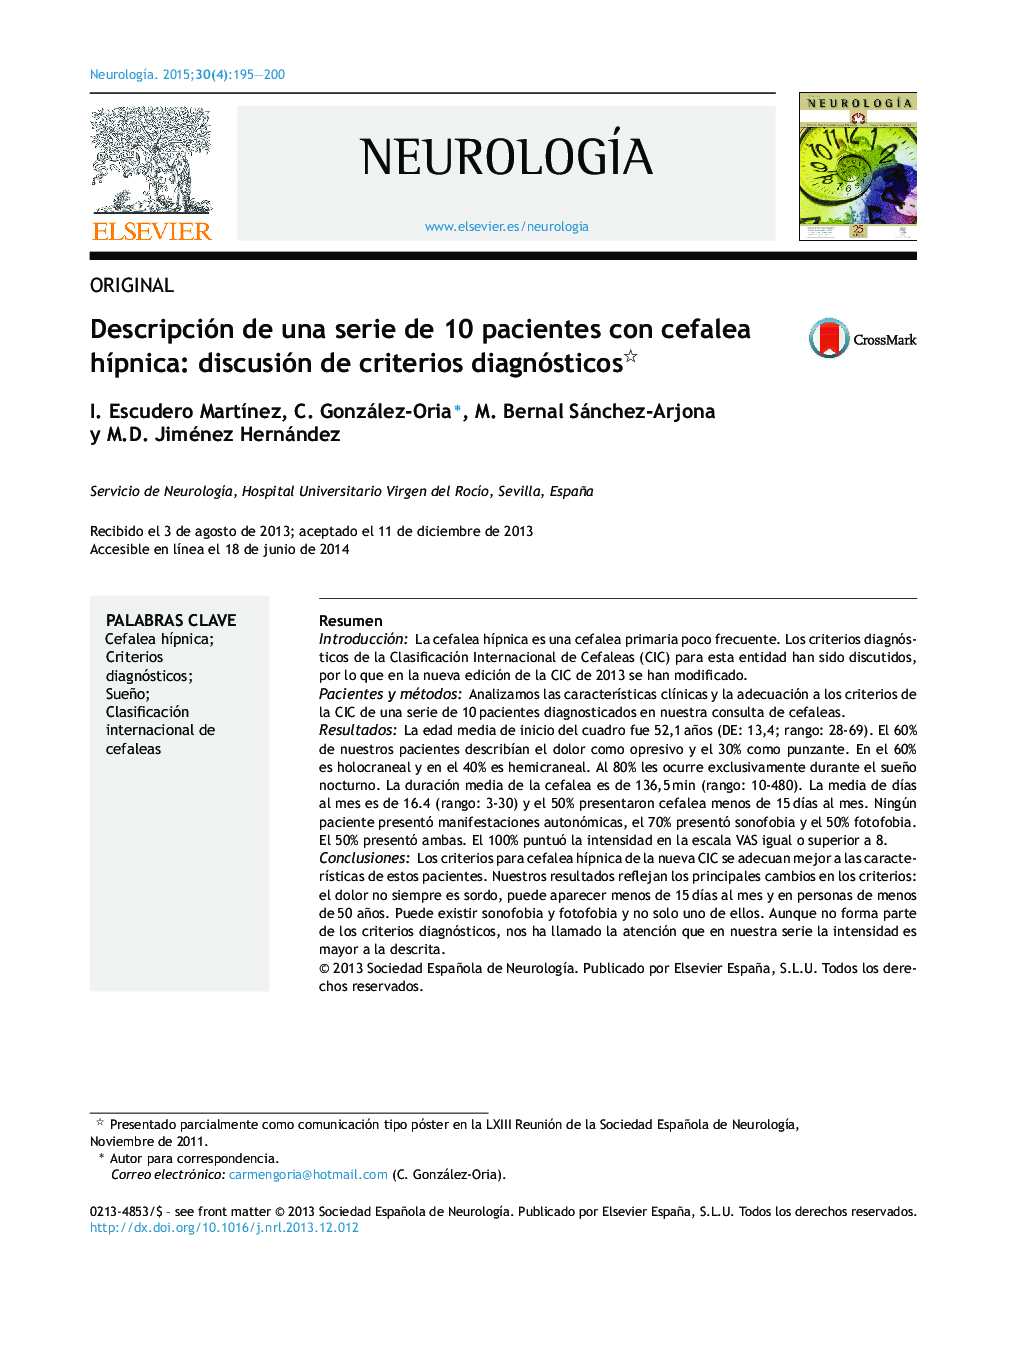 Descripción de una serie de 10 pacientes con cefalea hÃ­pnica: discusión de criterios diagnósticos